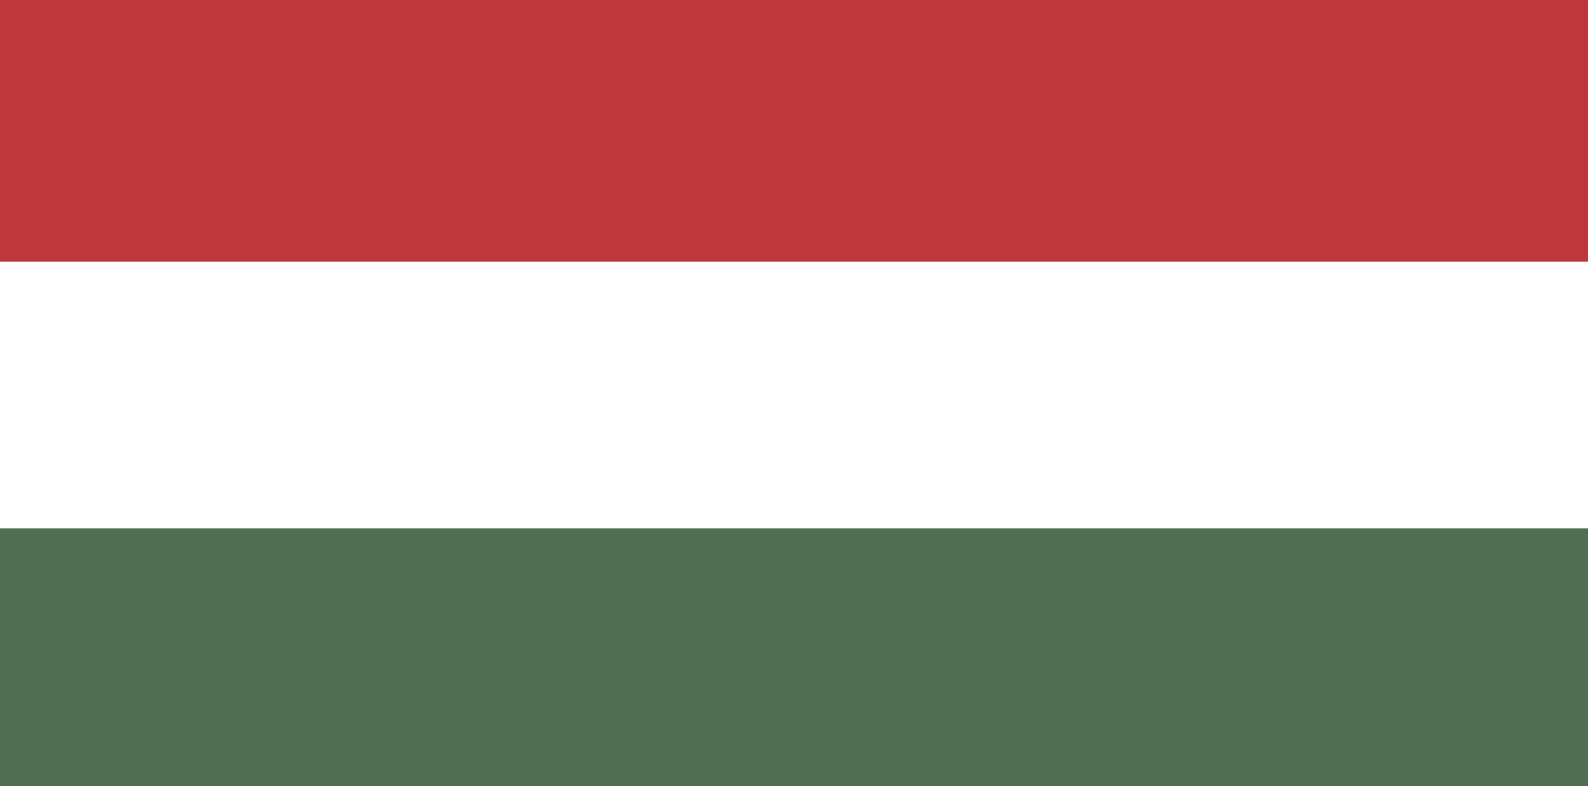 Hungary - proxy